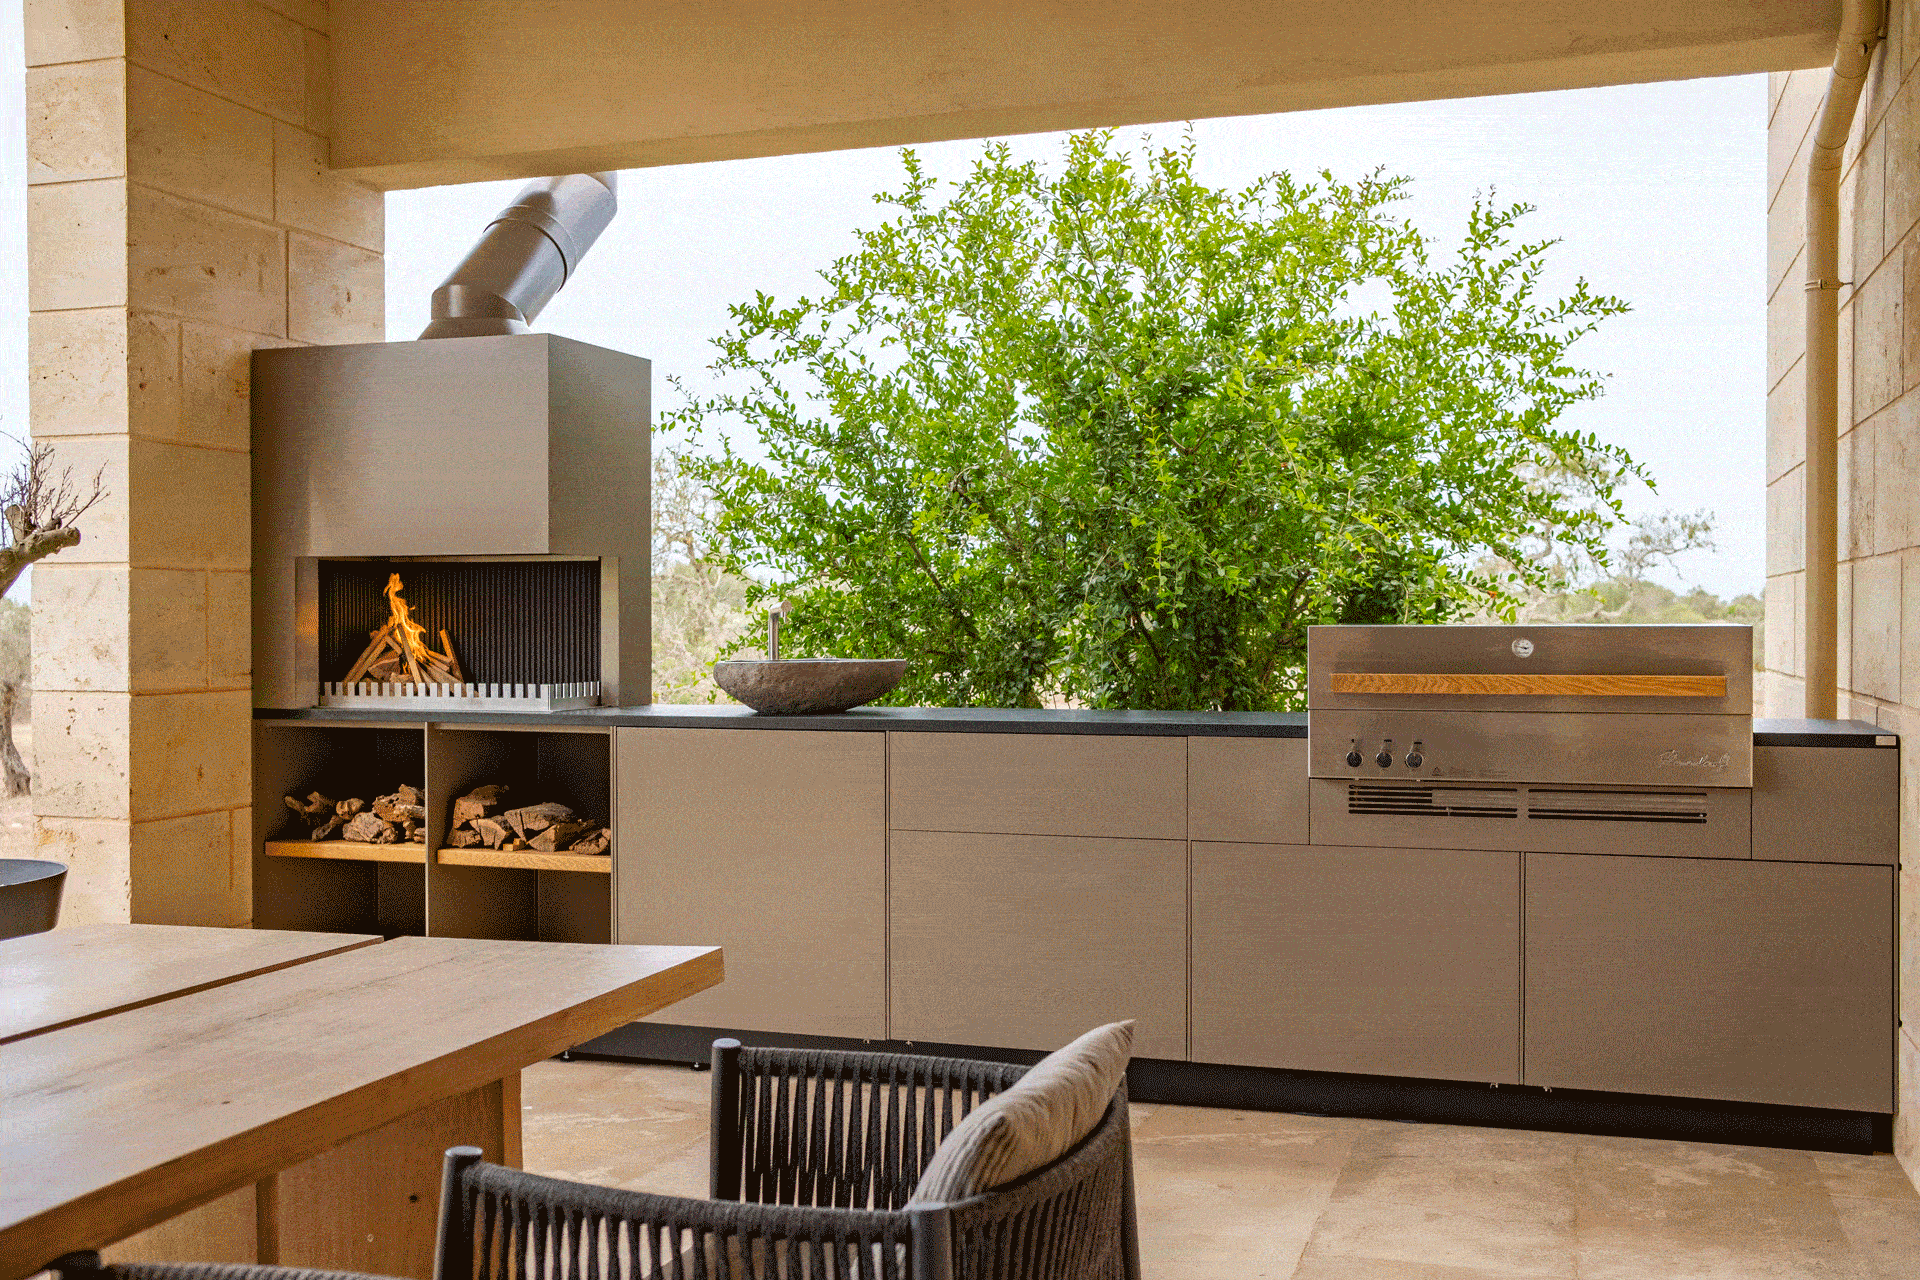 Diese wunderschöne Freiluftküche wurde genau auf Maß auf einer Finca auf Mallorca gebaut. Die Outdoor-Kitchen entstand in Manufakturarbeit und ist made in Germany.